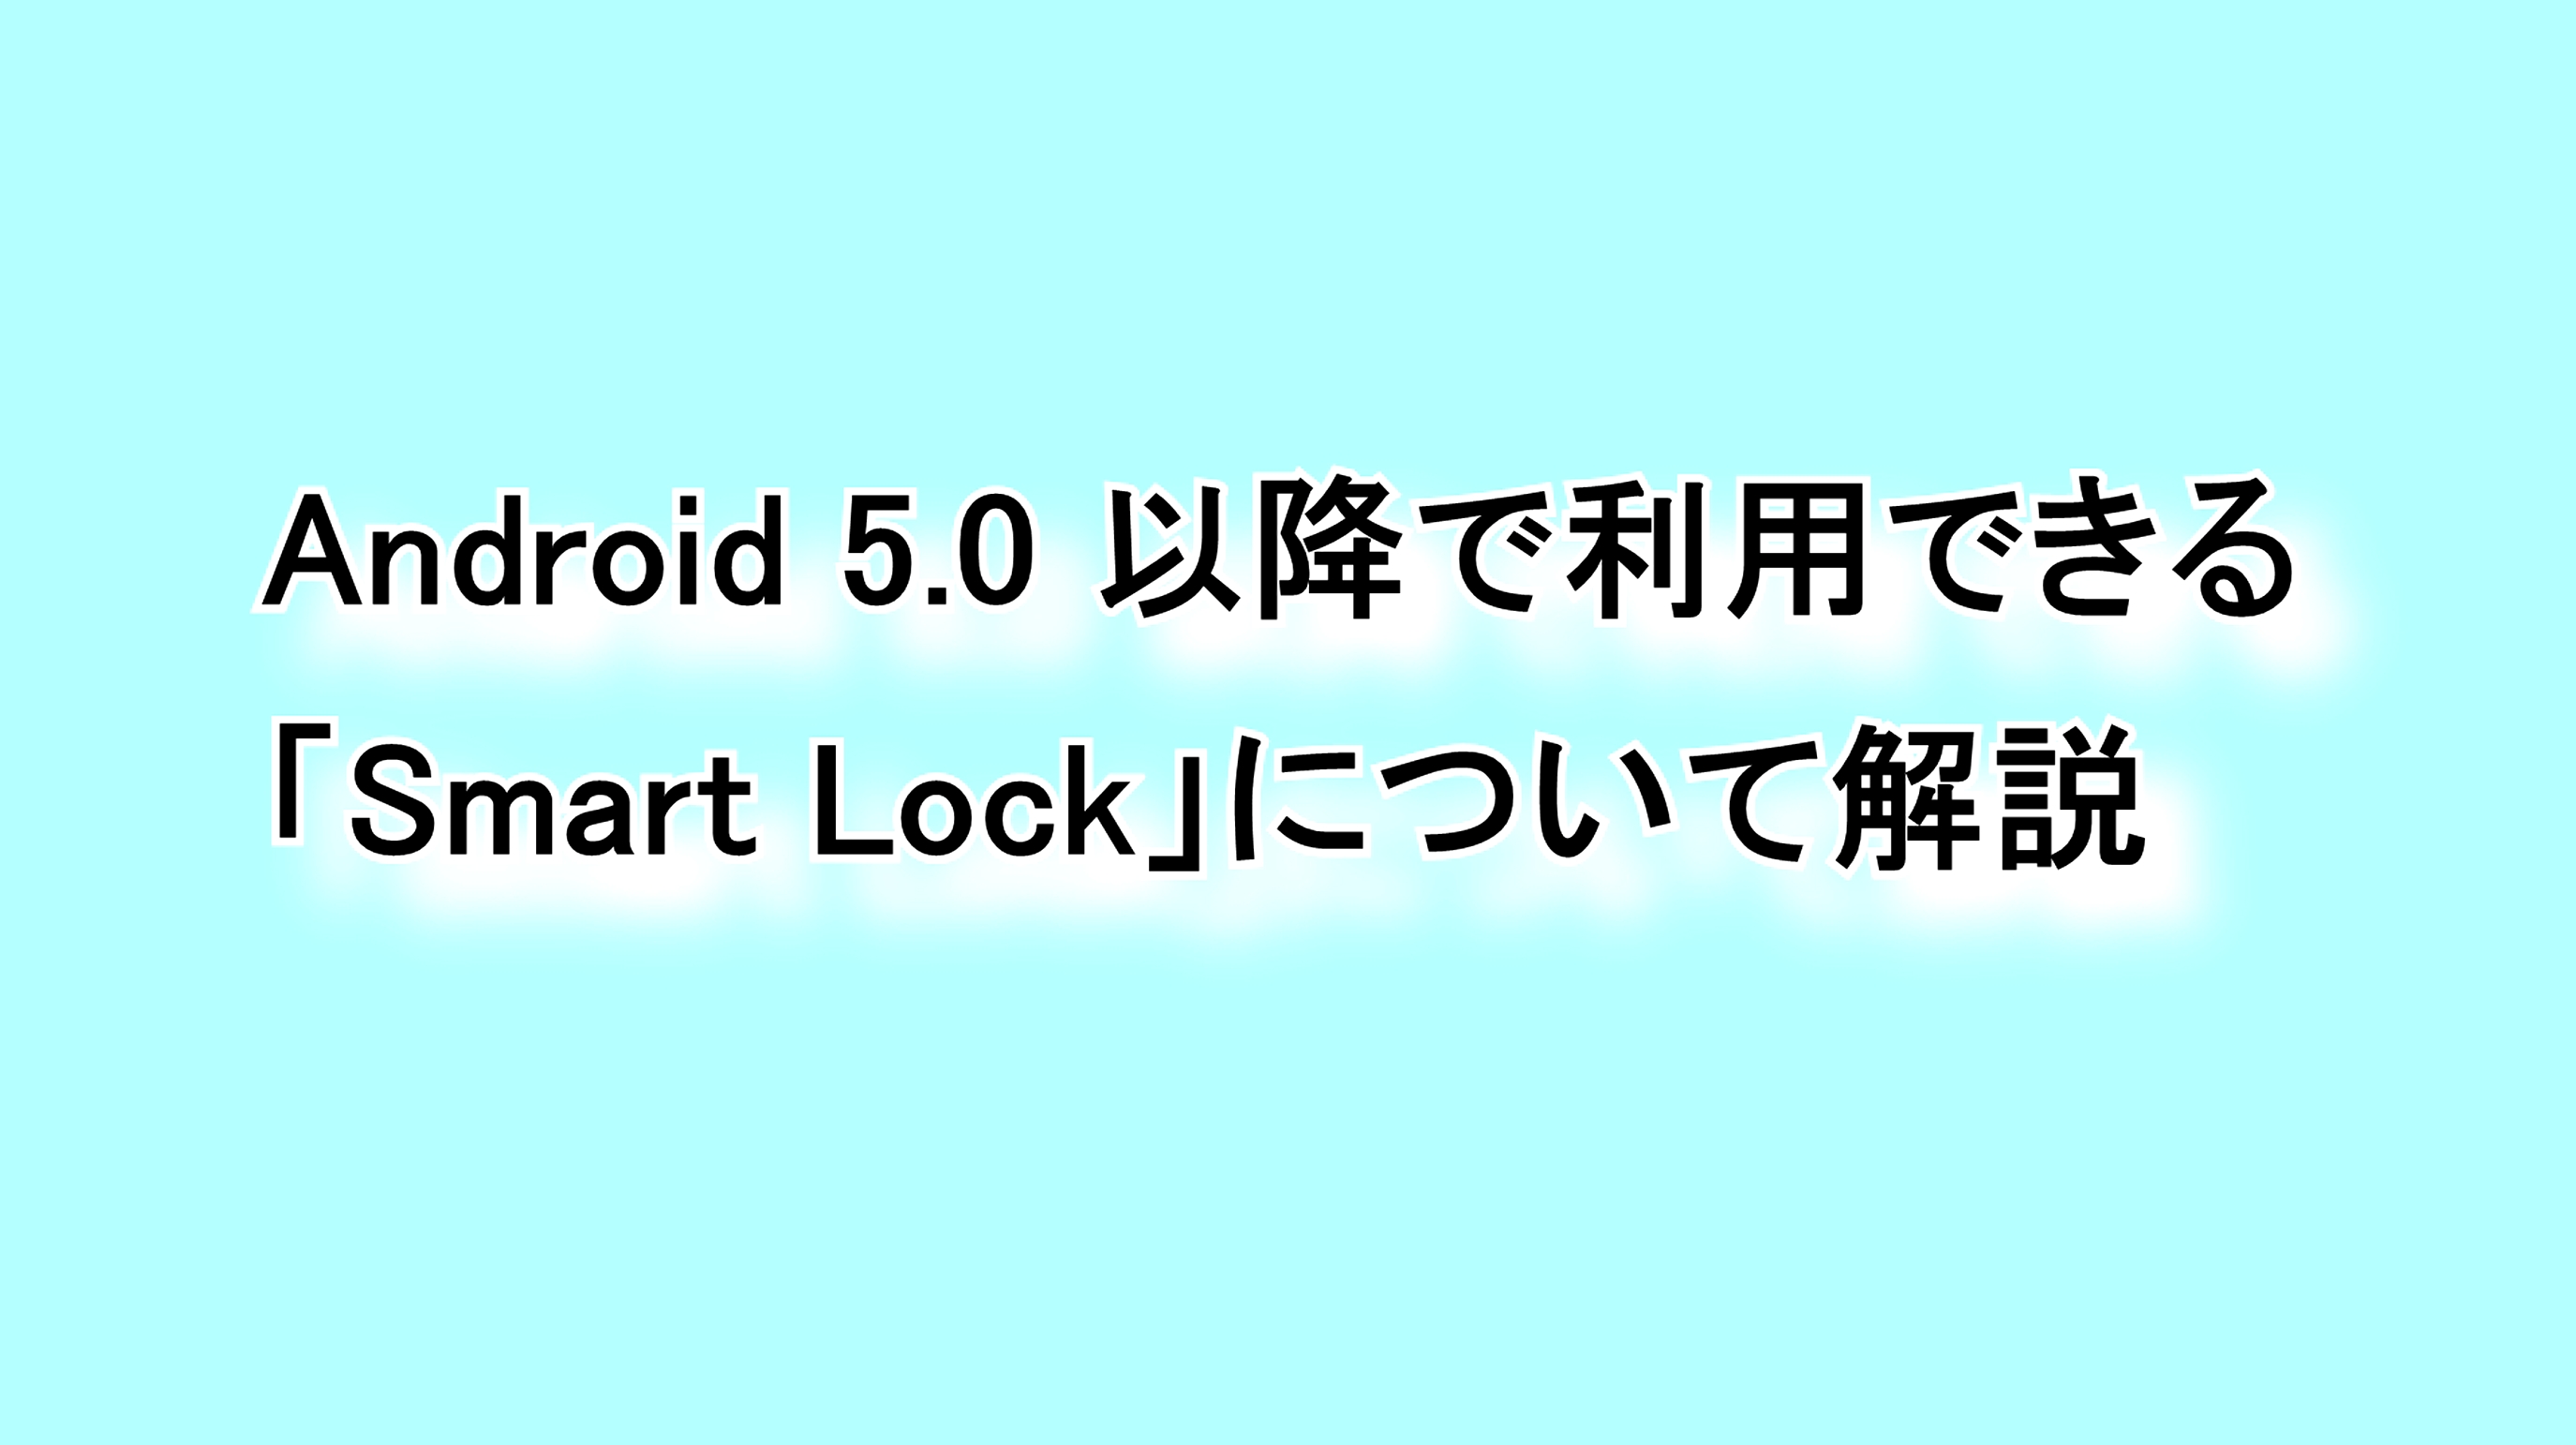 Android 5.0以降で利用できる「Smart Lock」について解説